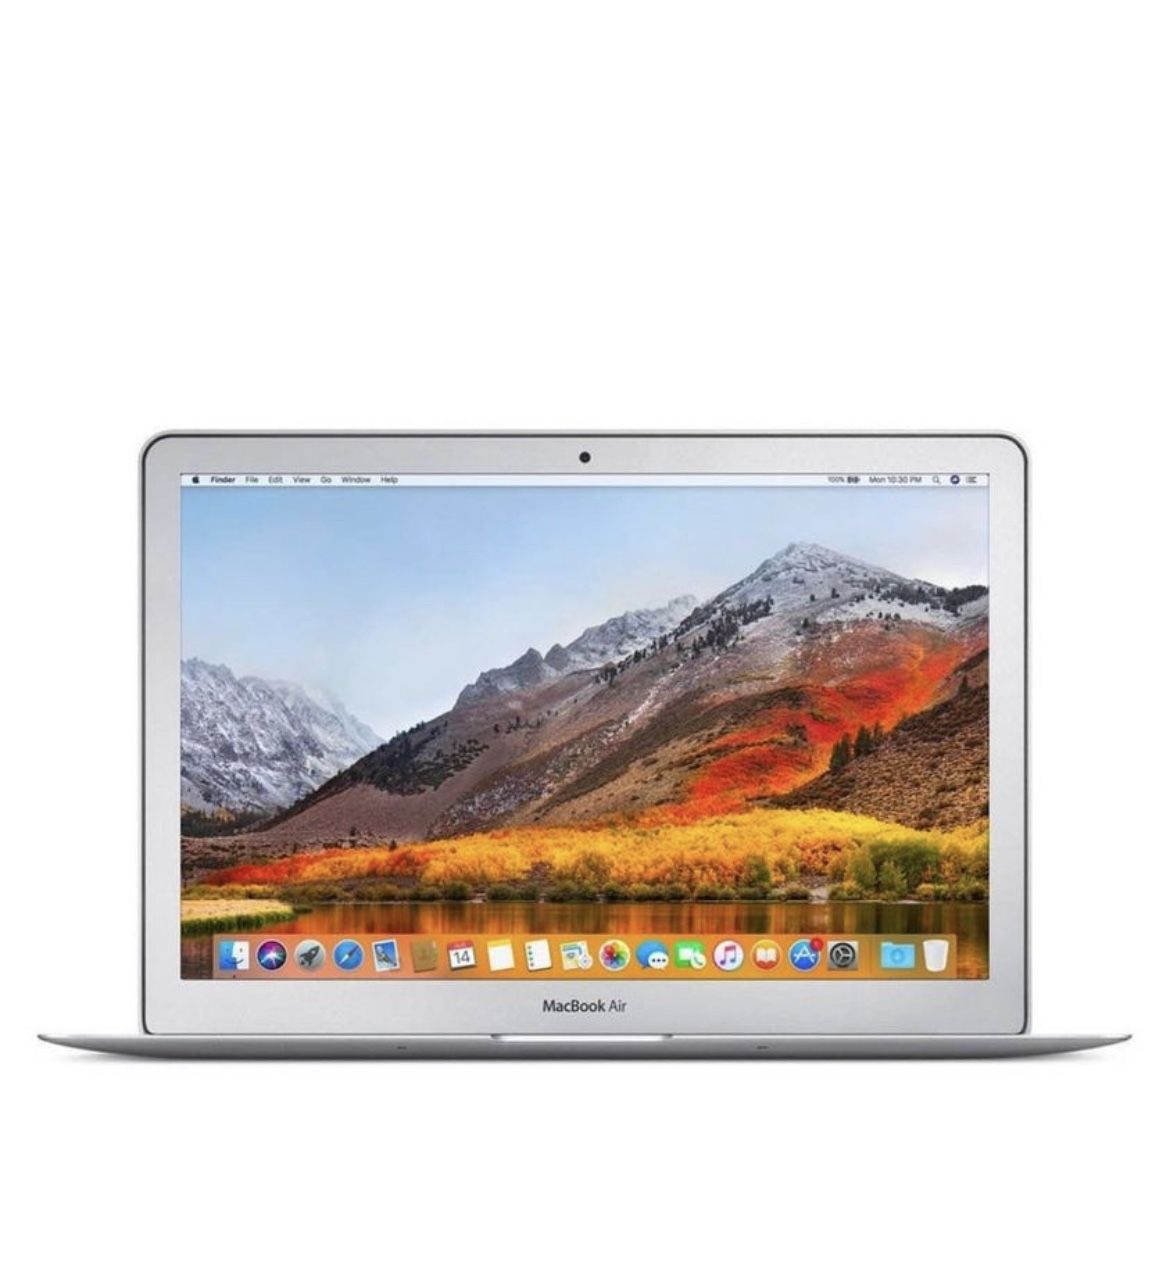 13” Apple MacBook Air 1.8GHz Dual Core i7